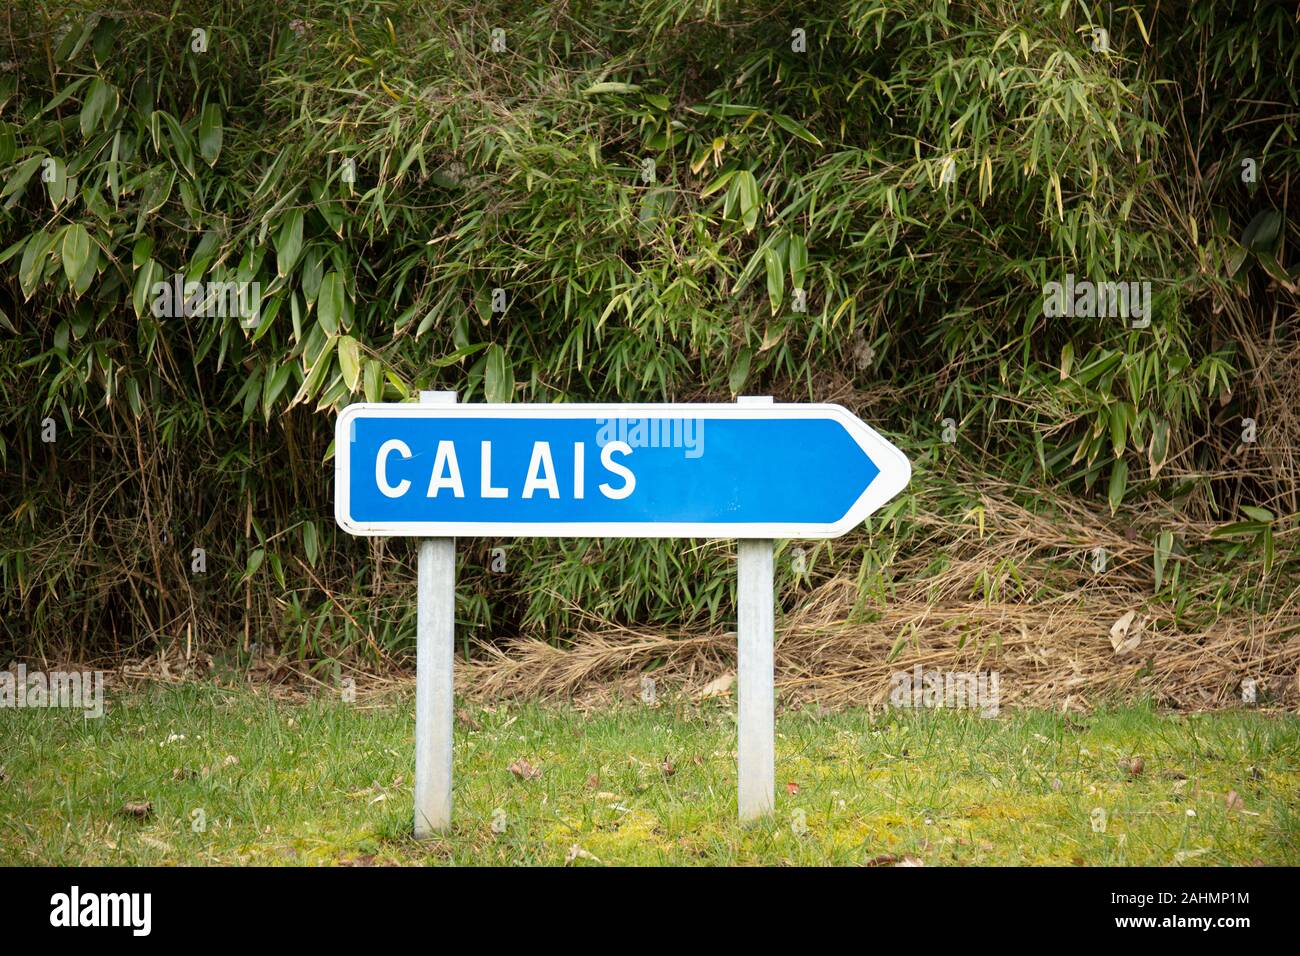 Panneau routier français indiquant la direction de Calais par l'autoroute avec le feuillage derrière Banque D'Images